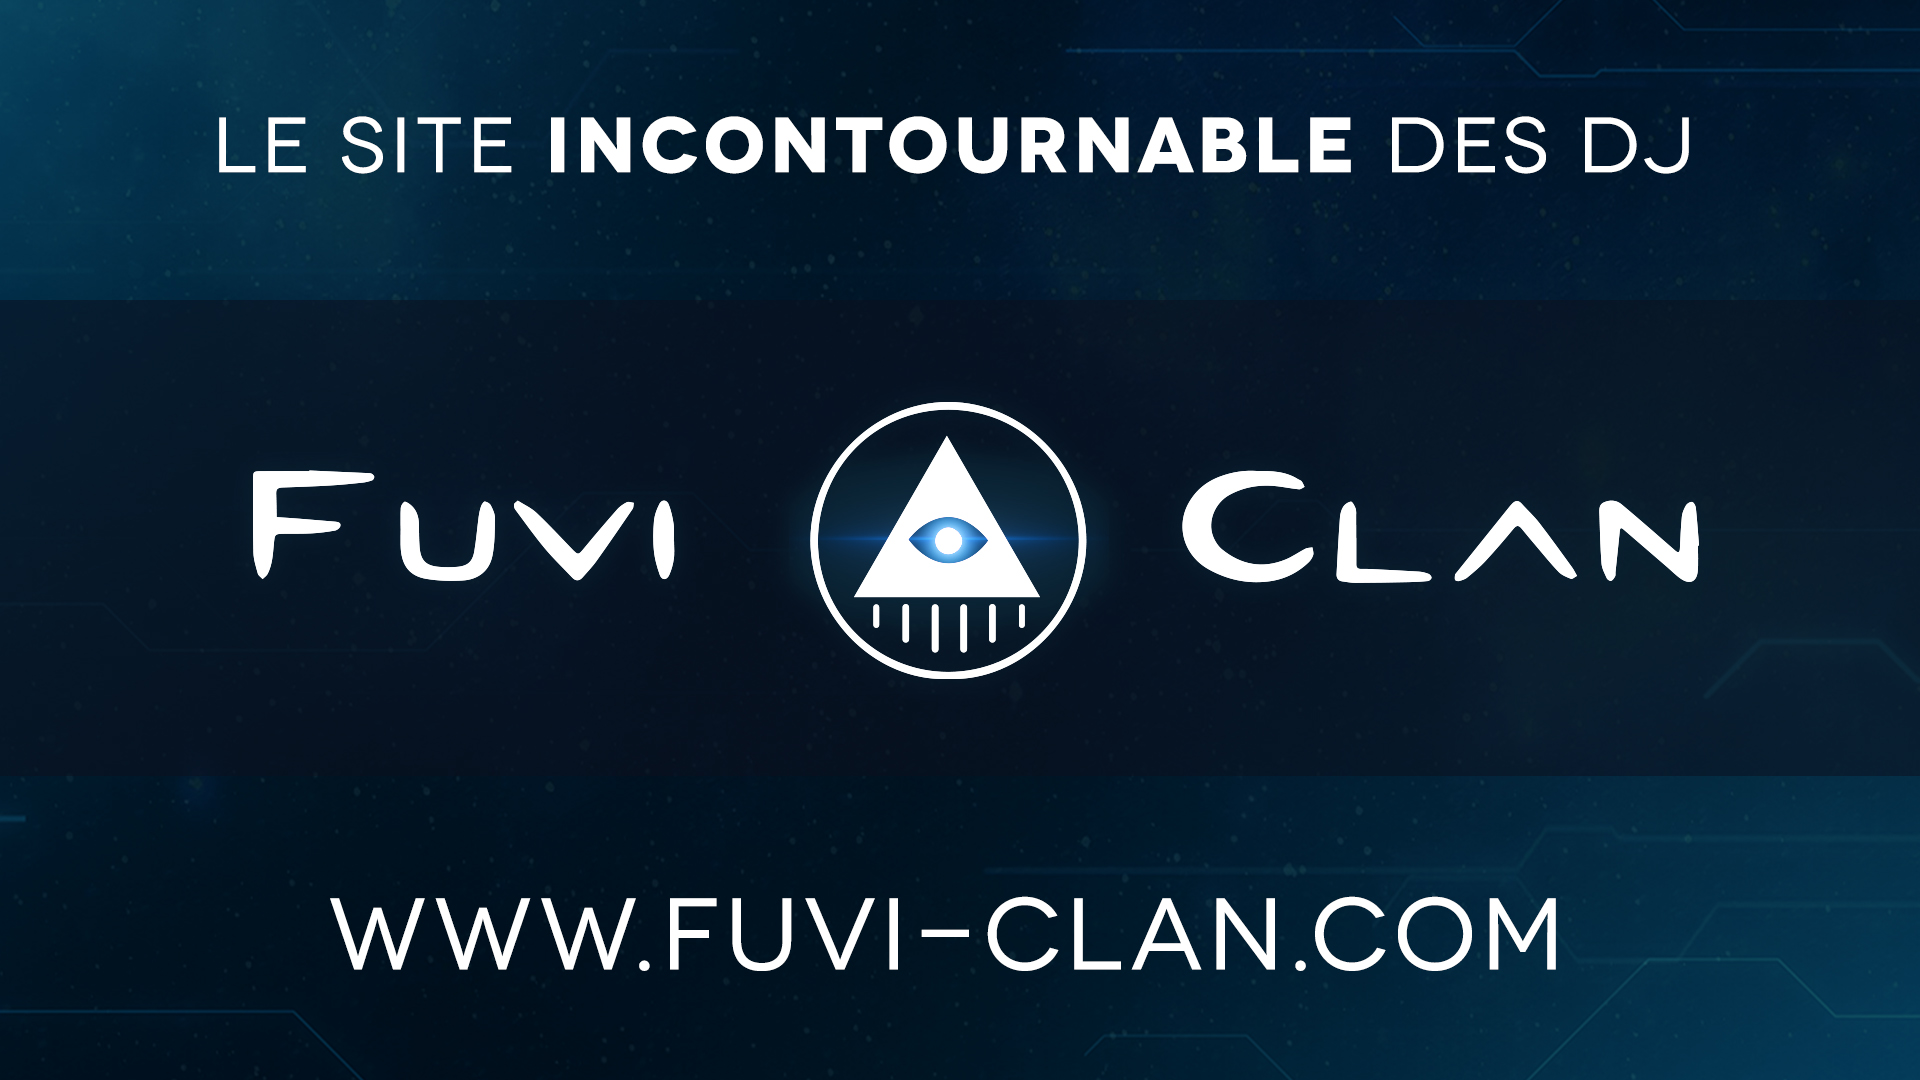 www.fuvi-clan.com